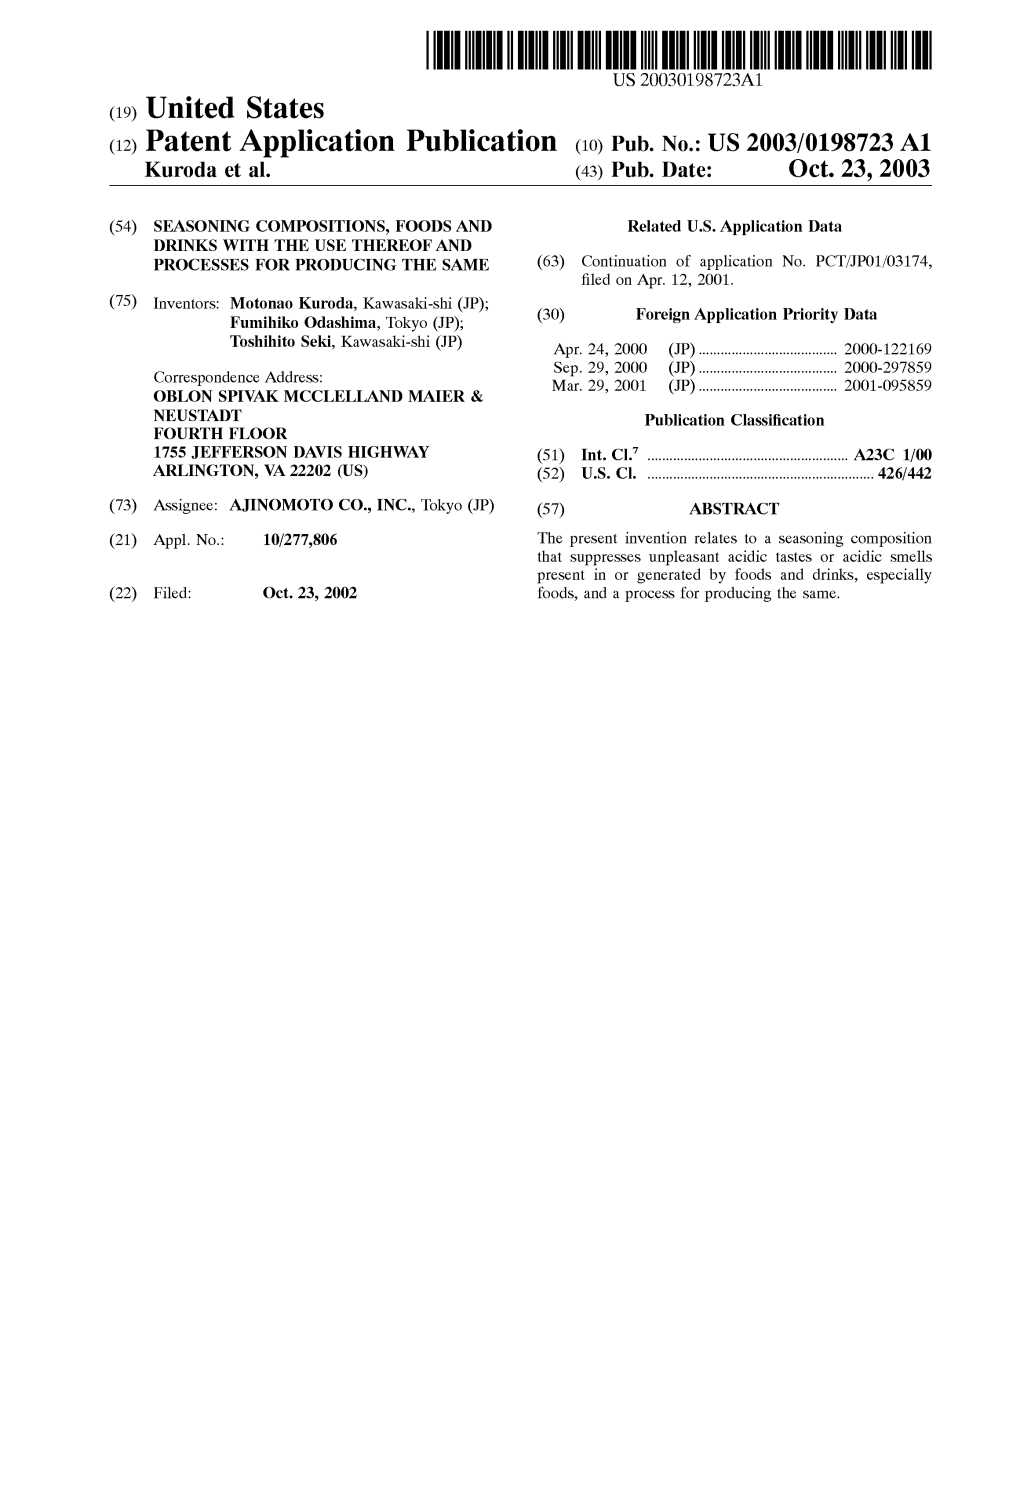 (12) Patent Application Publication (10) Pub. No.: US 2003/0198723 A1 Kuroda Et Al